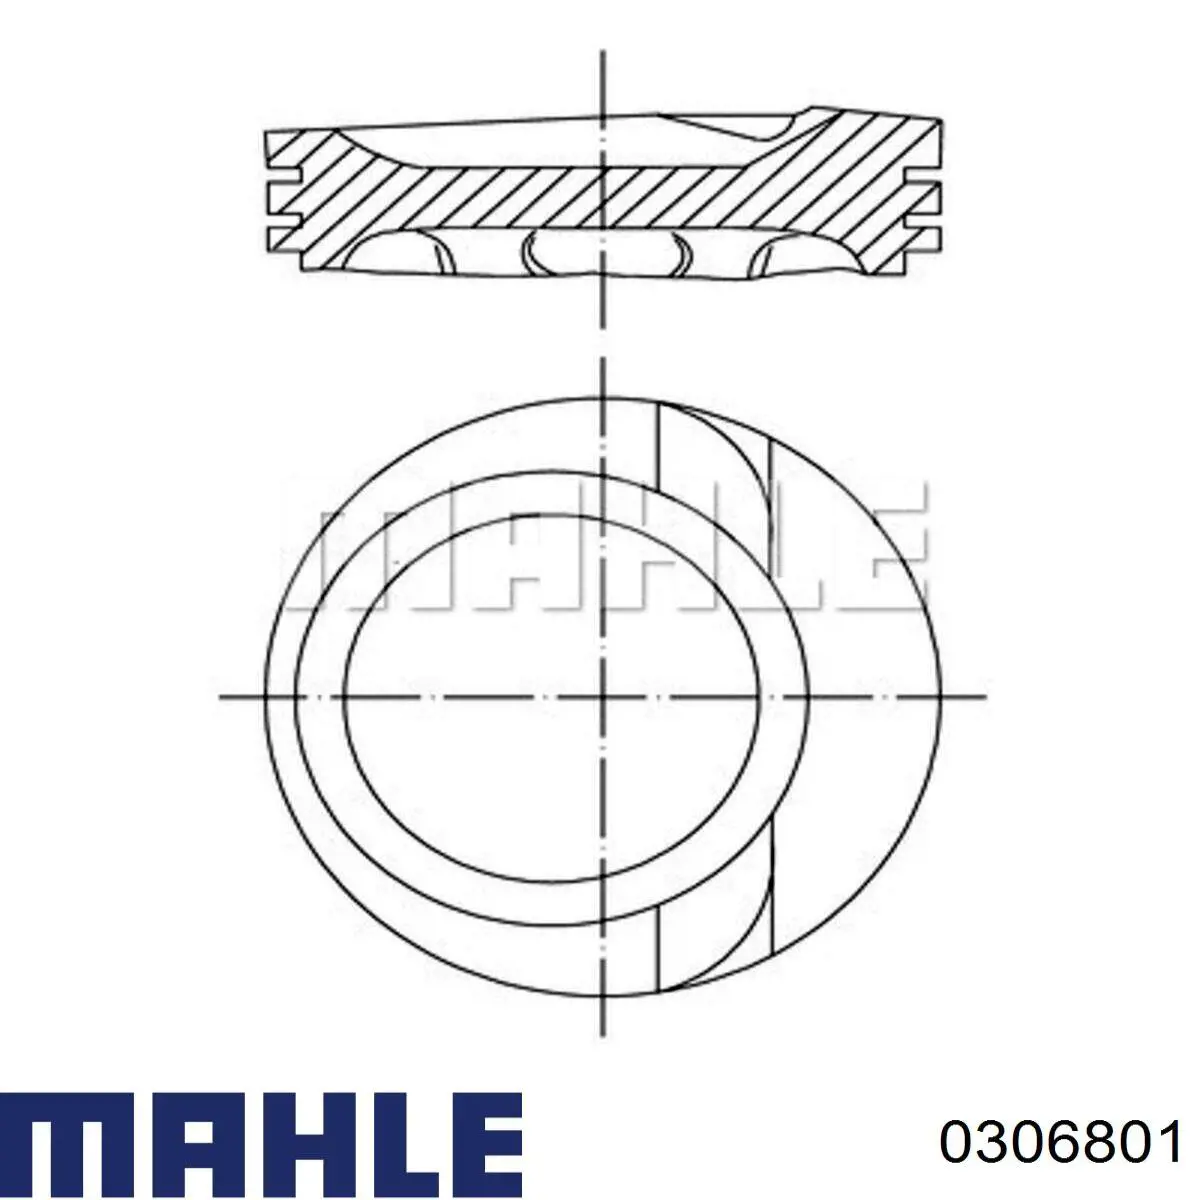 03068 01 Knecht-Mahle поршень в комплекте на 1 цилиндр, 2-й ремонт (+0,50)